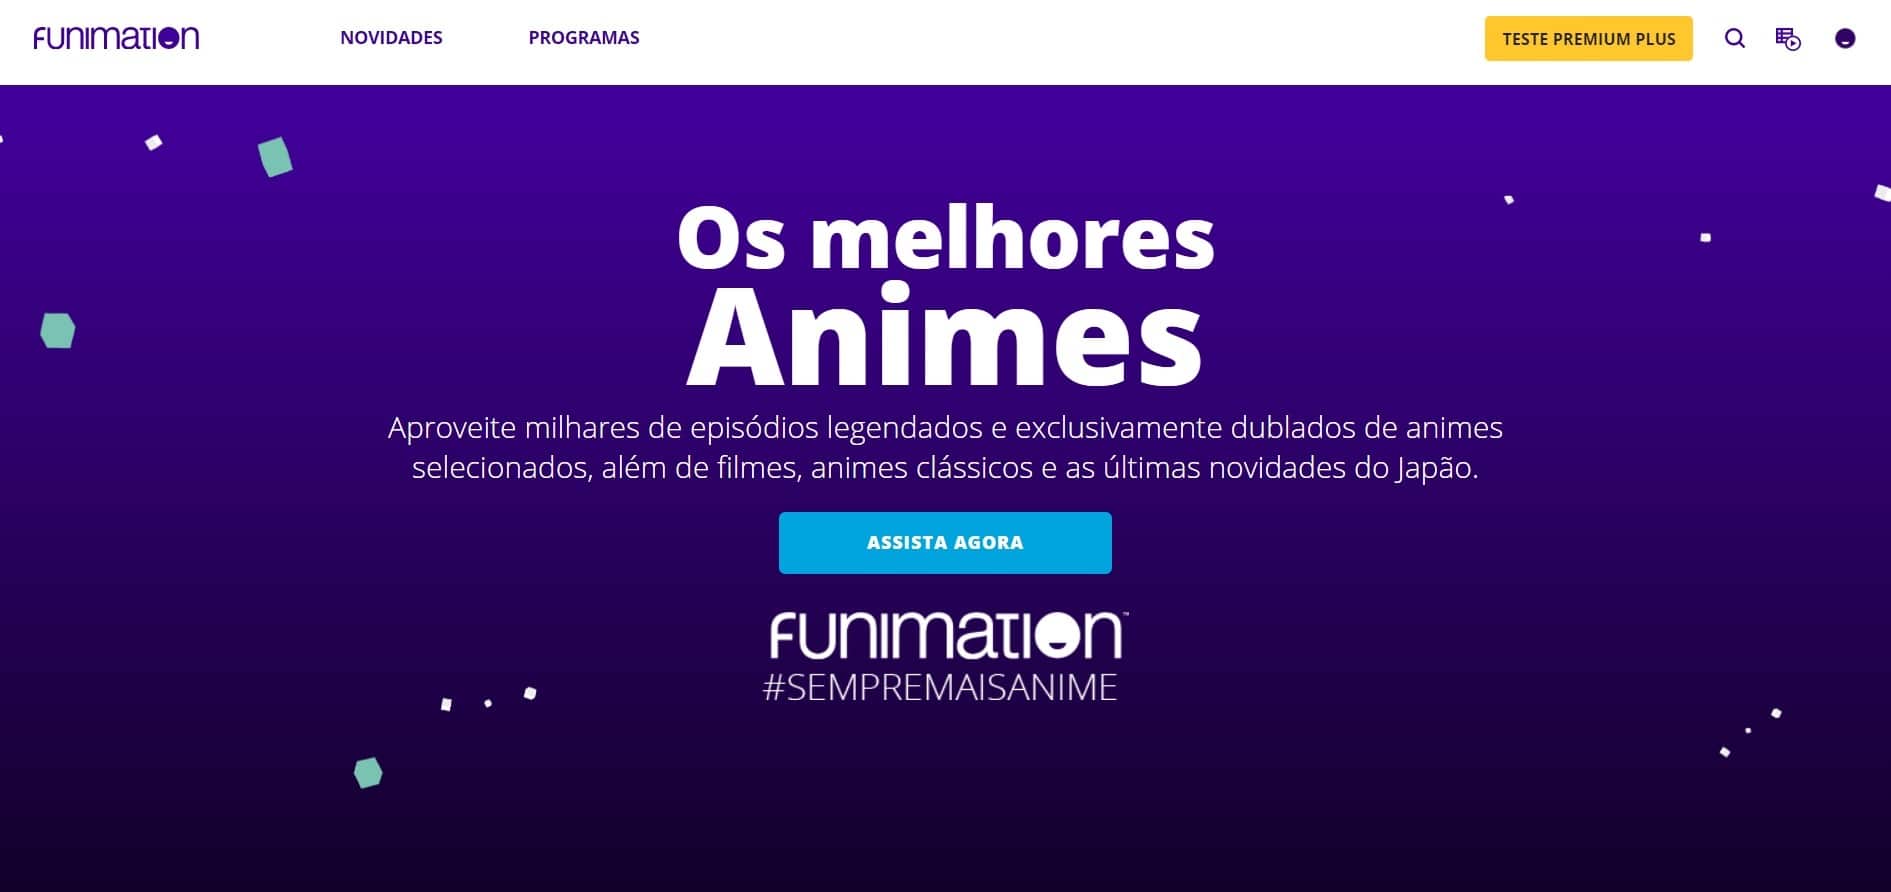 Funimation chega ao Brasil com animes dublados e legendados - Funimatio